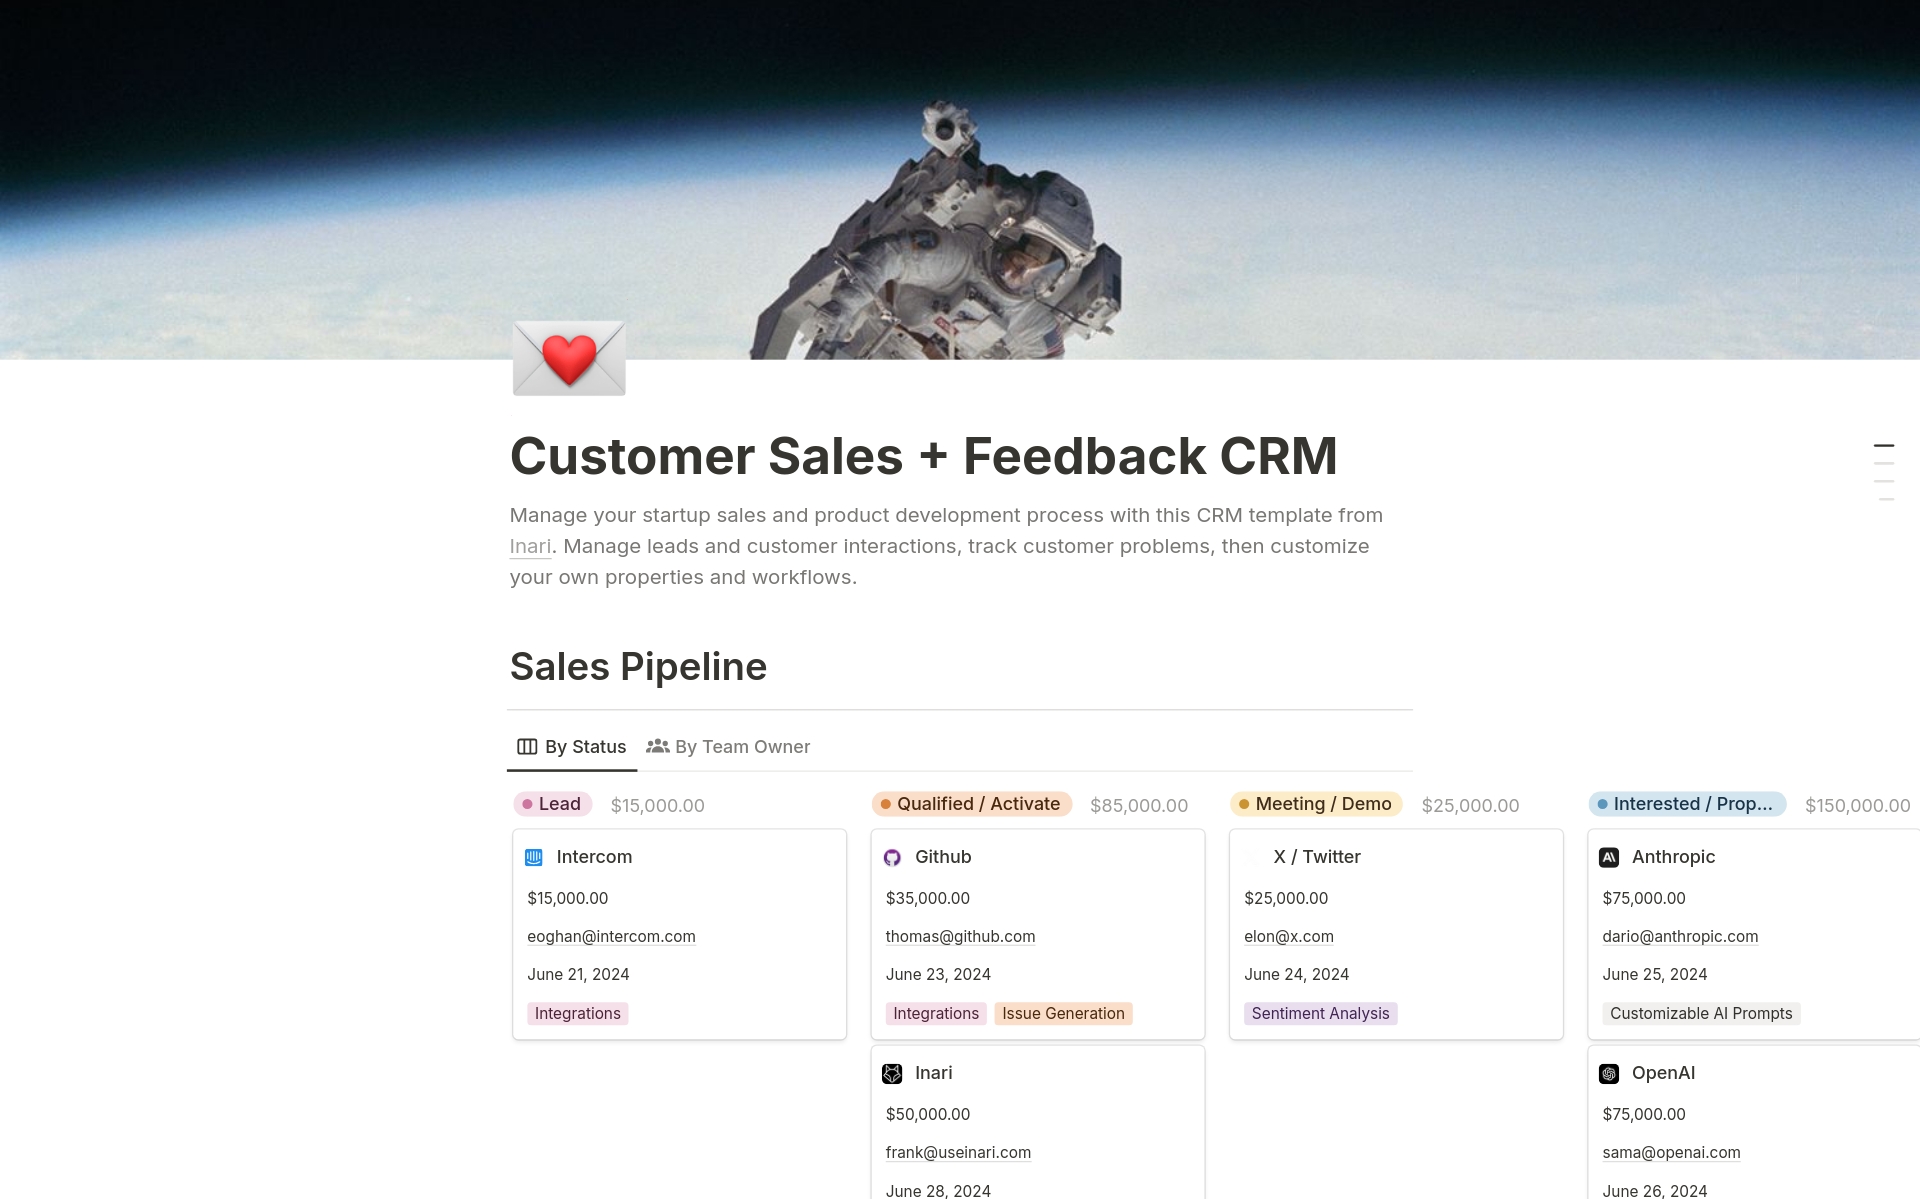 Vista previa de una plantilla para Inari's Customer Sales + Feedback CRM